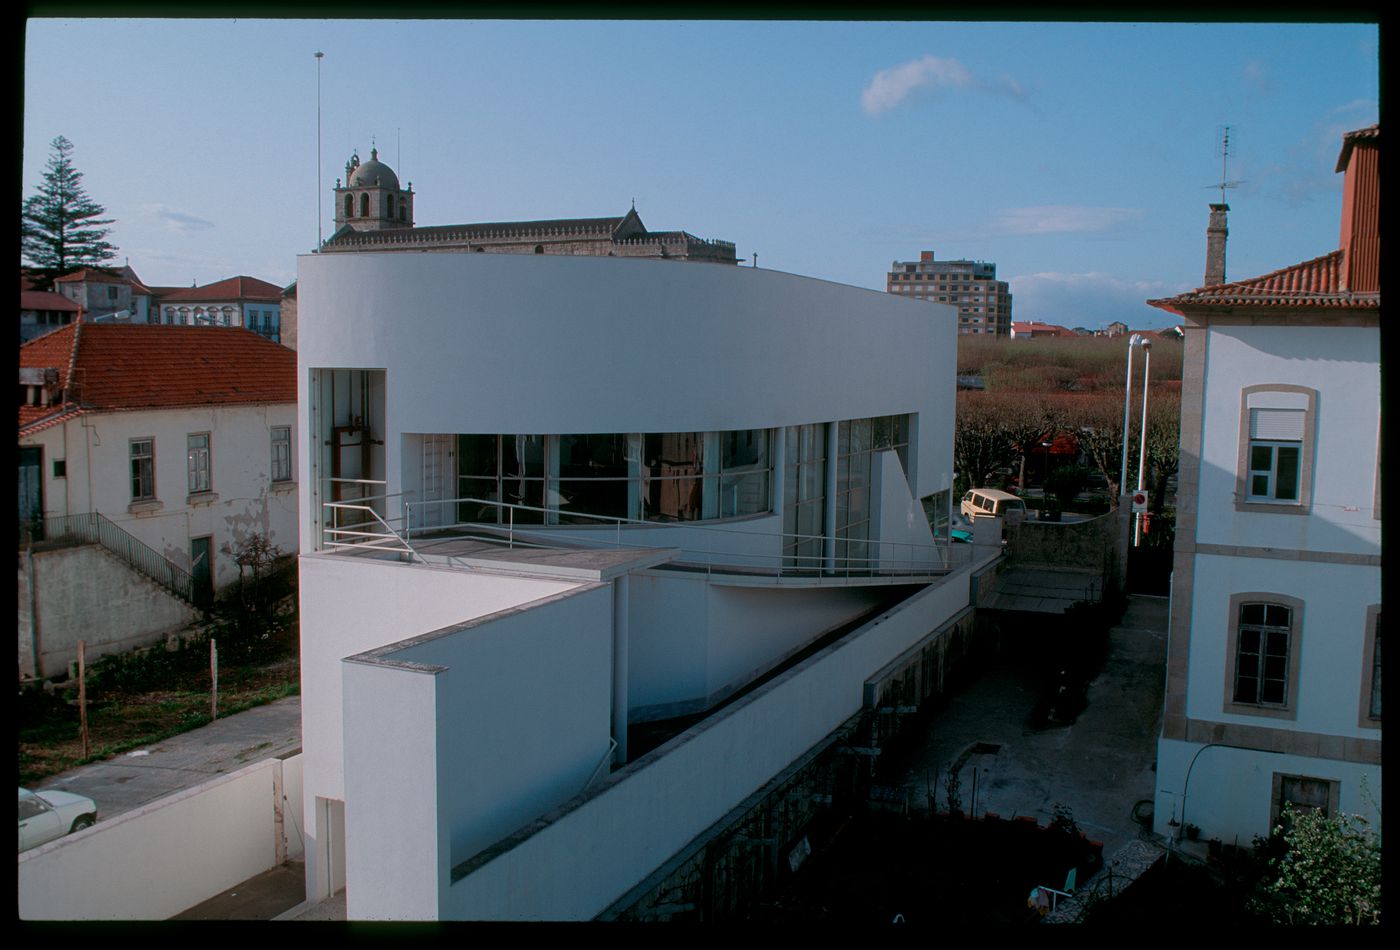 Exterior view of Banco Borges & Irmão II [Borges & Irmão bank II], Vila do Conde, Portugal